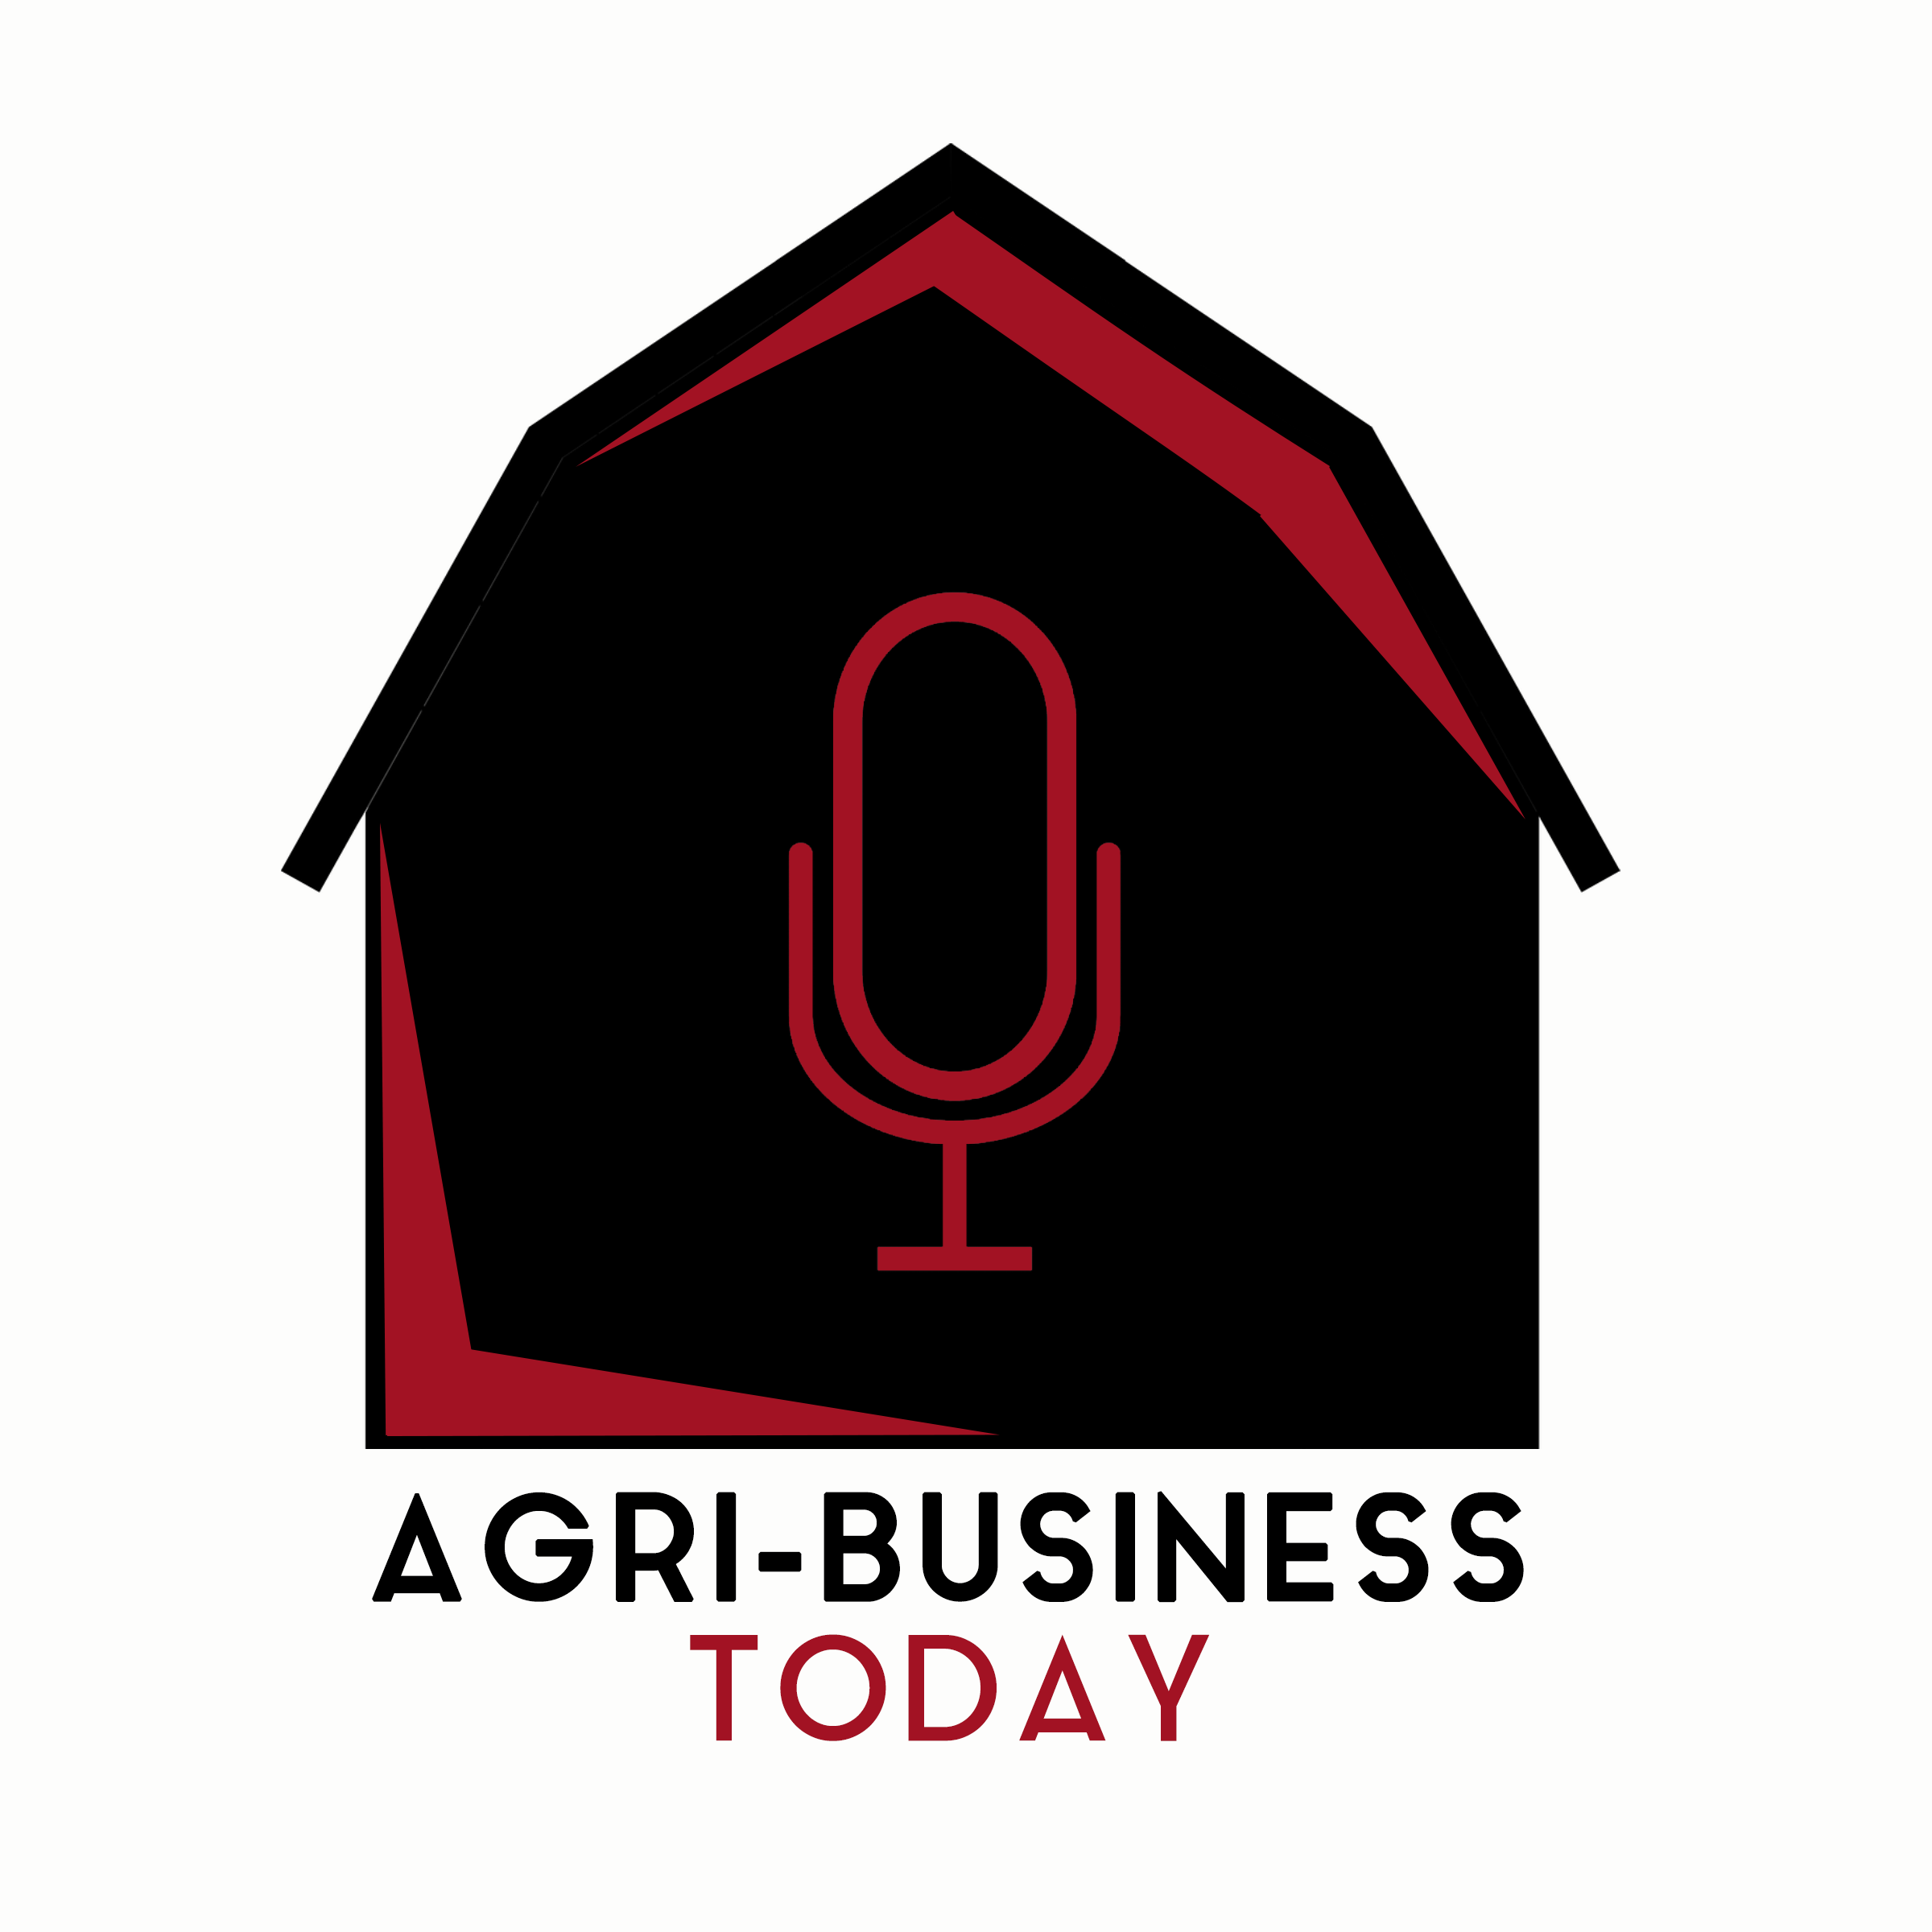 AFBF President Talks About The Farm Bill